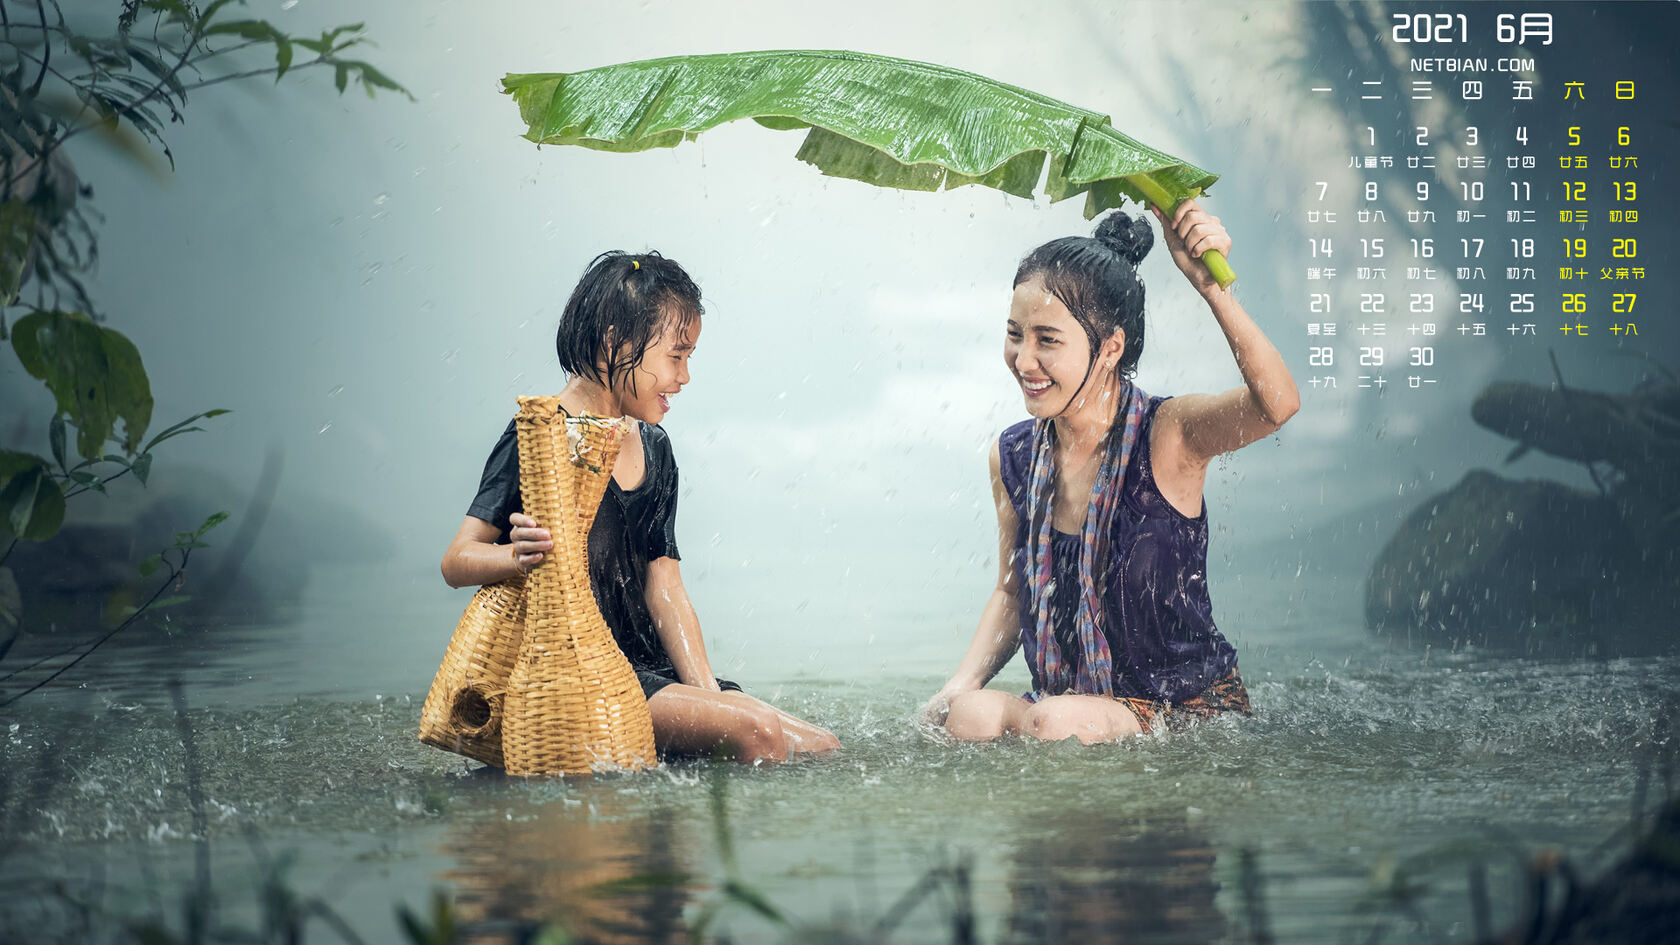 2021年6月日历图片，在大雨中捕鱼的两个越南少女，女孩壁纸图片第1张图片